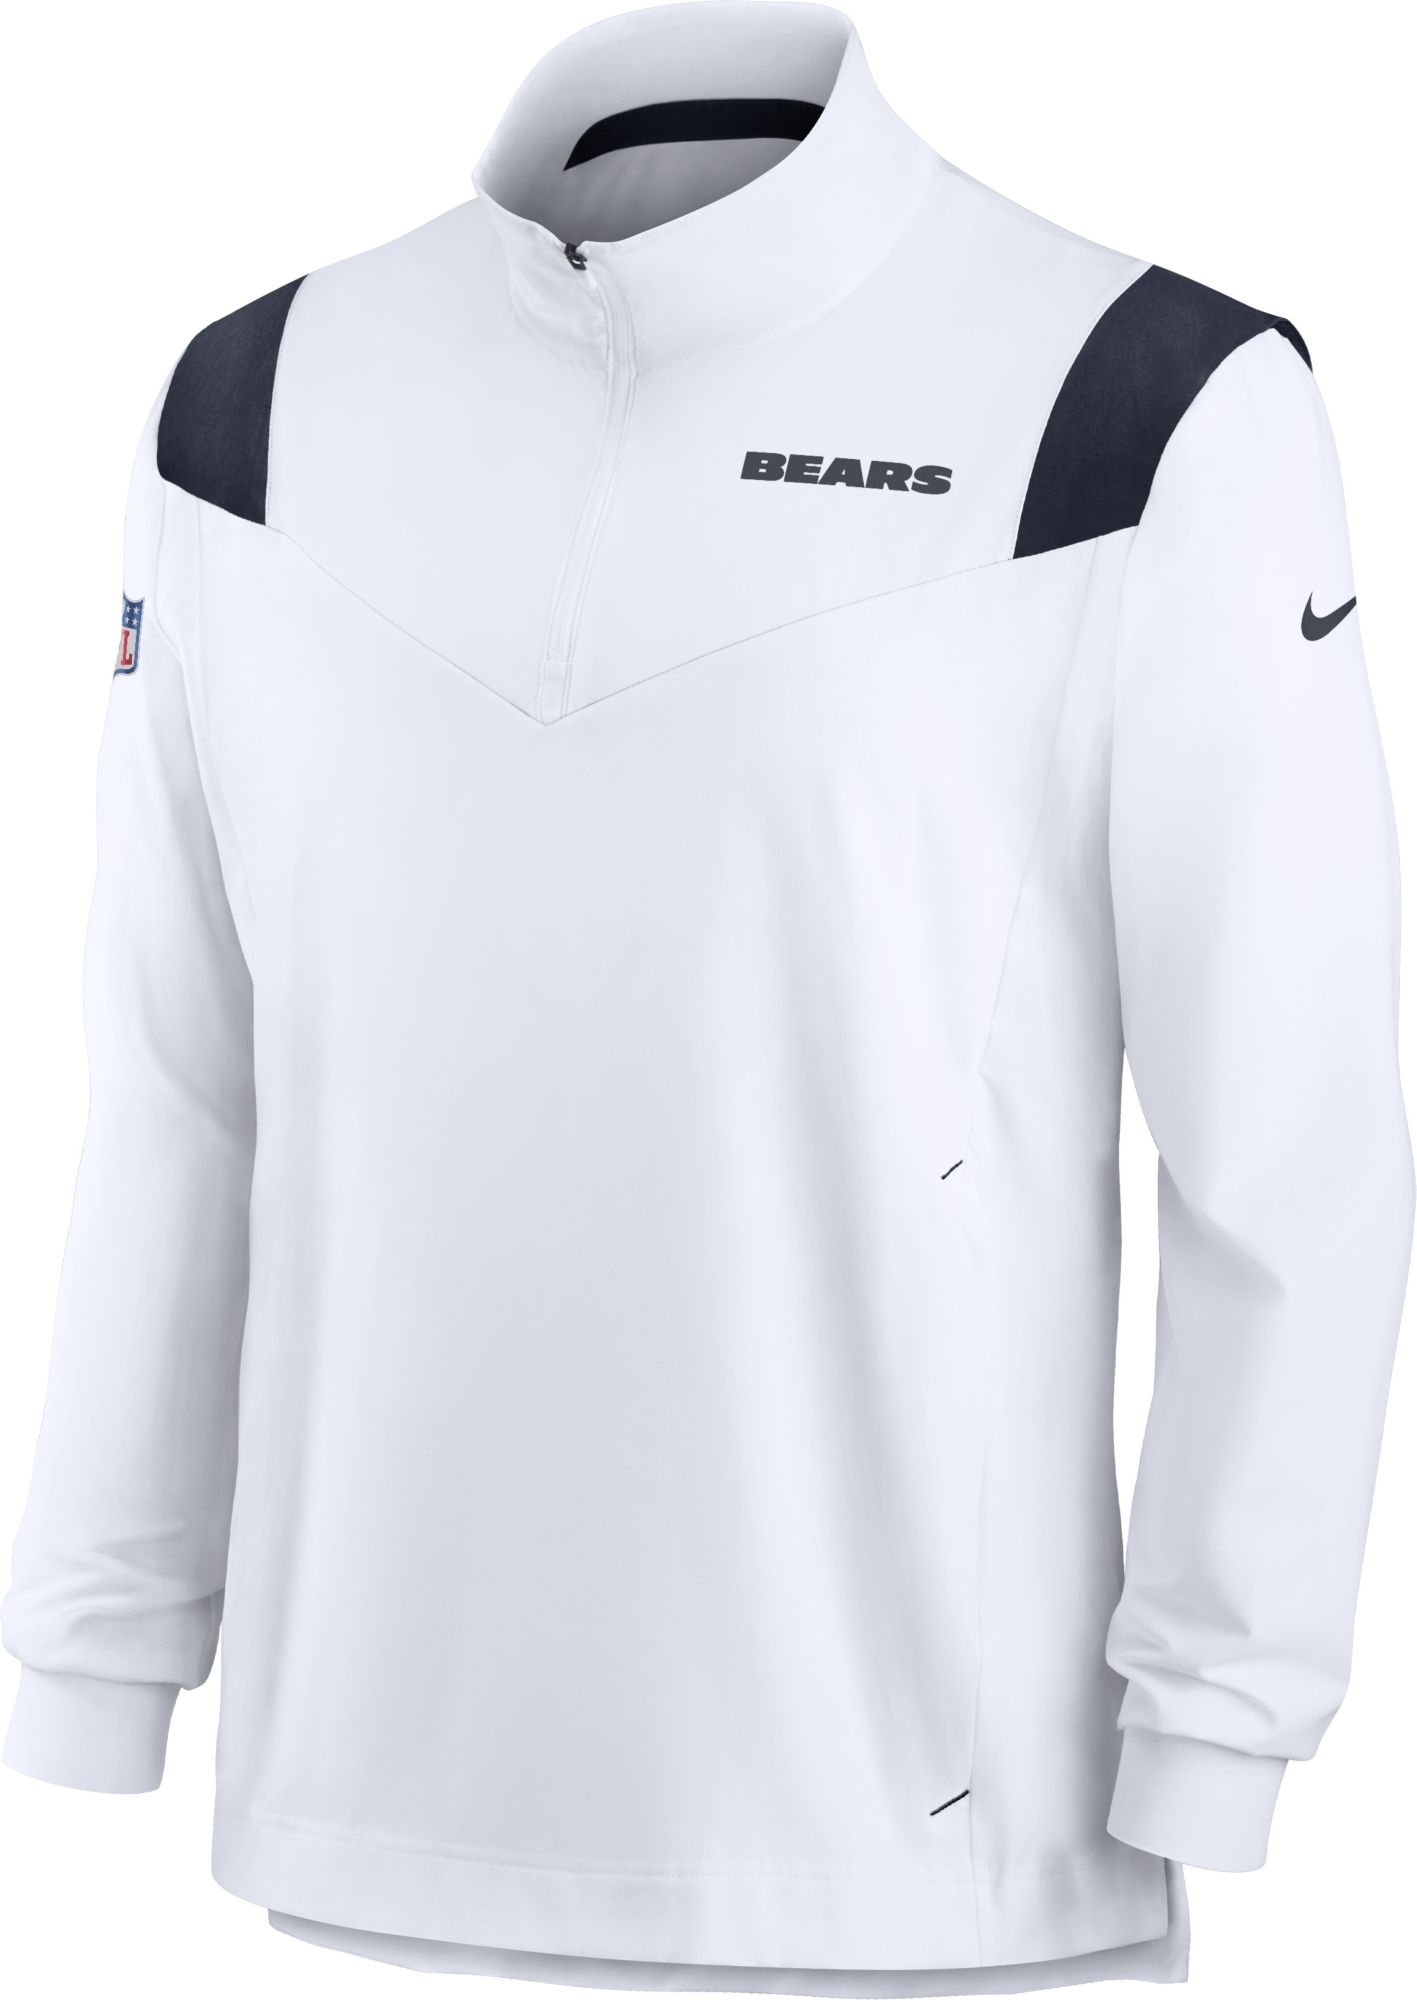 Nike / Men's Chicago Bears Coaches Sideline Long Sleeve White Jacket